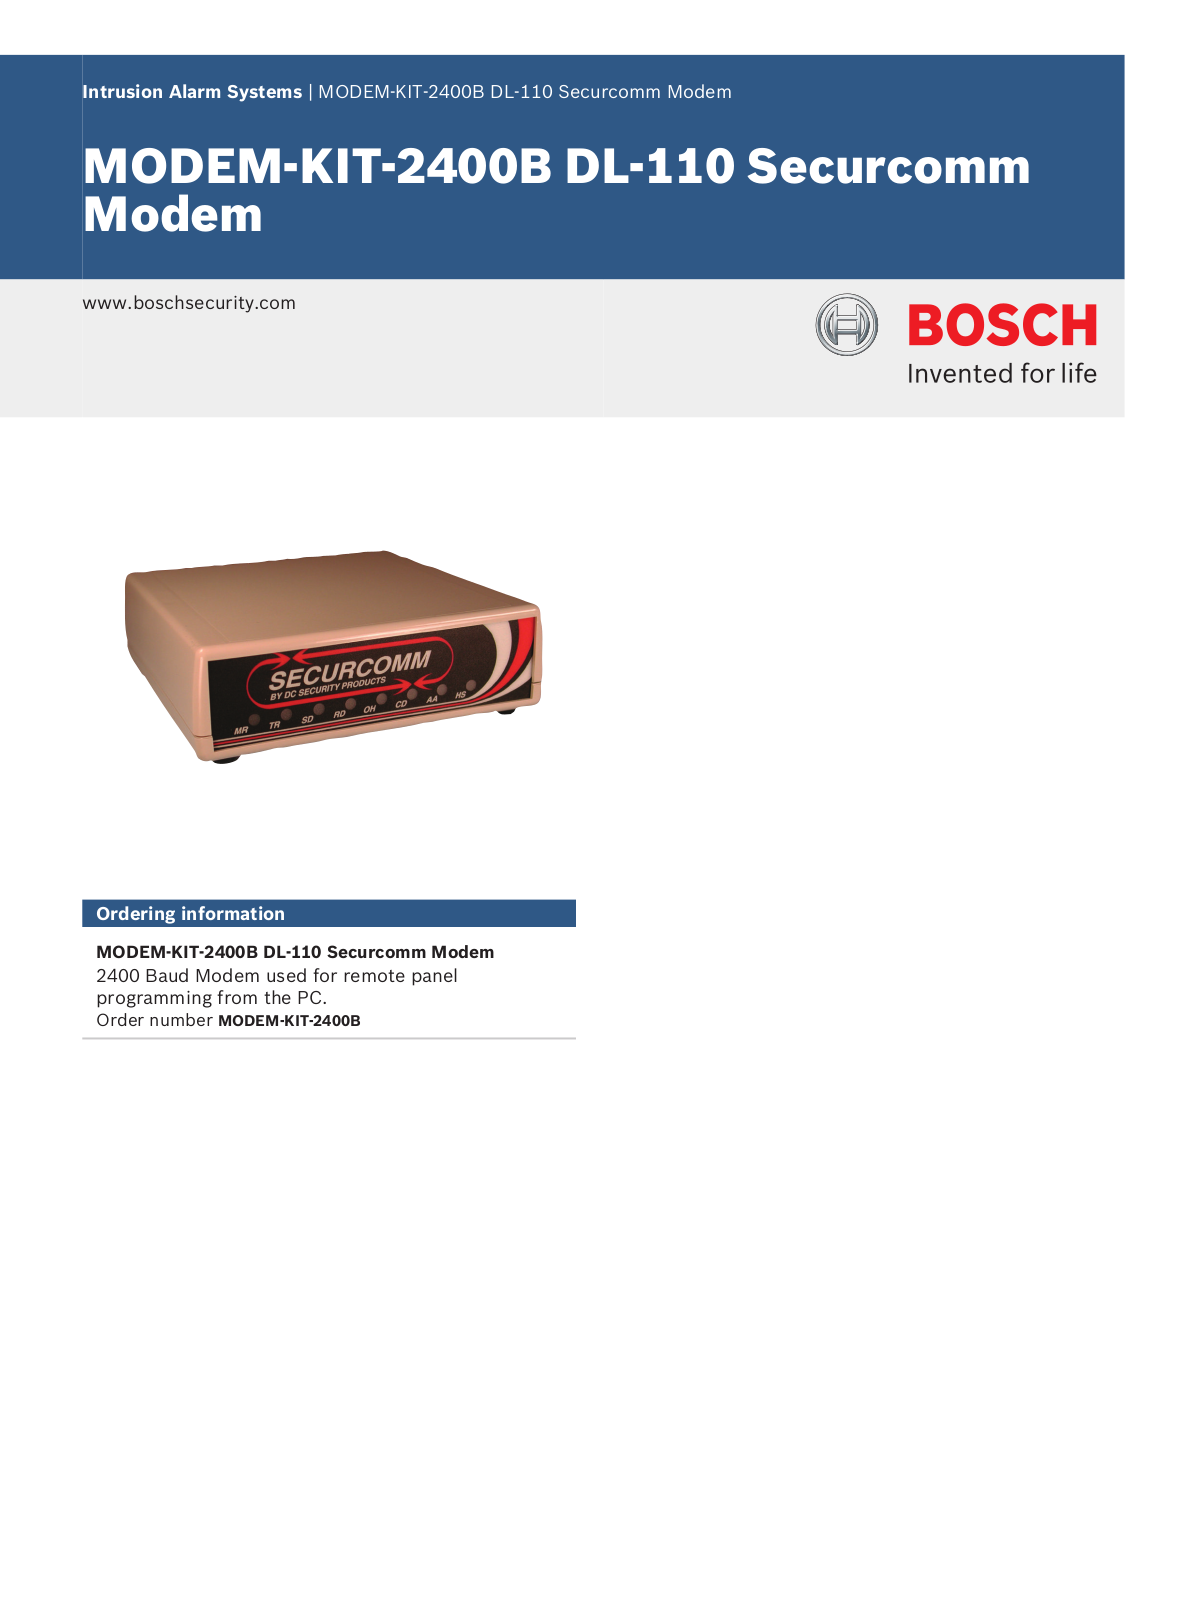 Bosch MODEM-KIT-2400B Specsheet